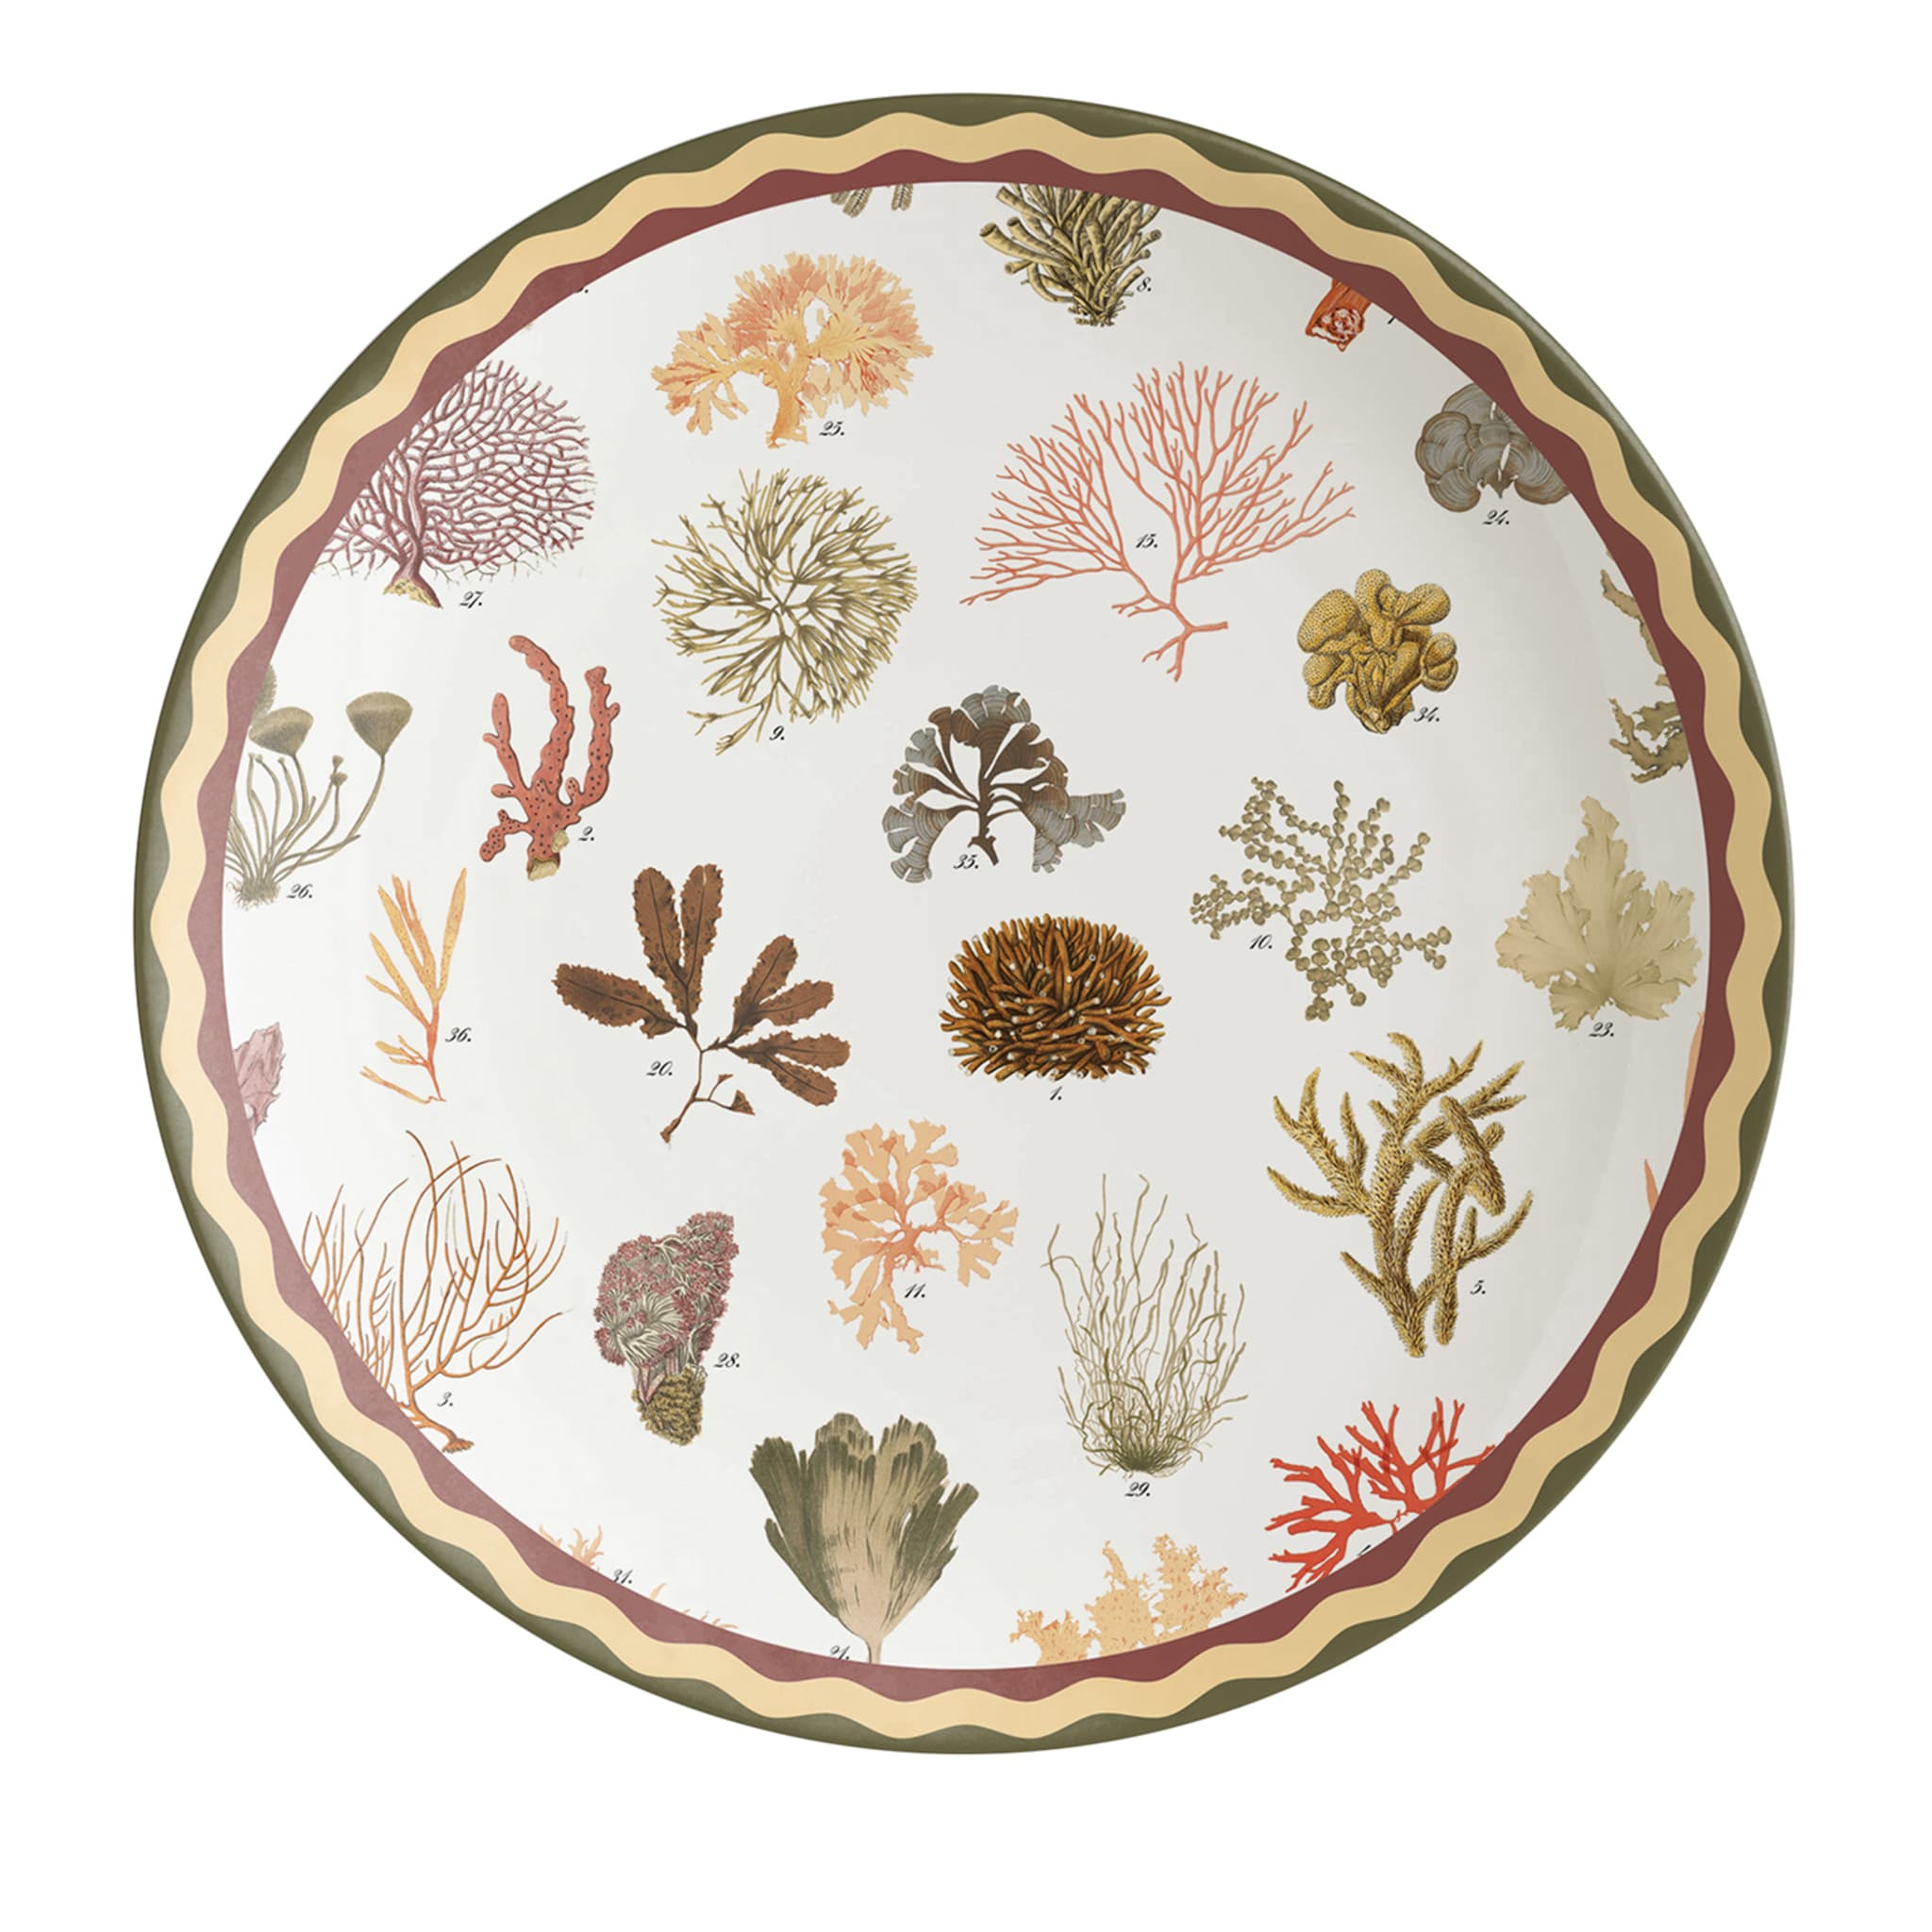 Cabinet De Curiosités Porcelain Dinner Plate With Corals - Main view